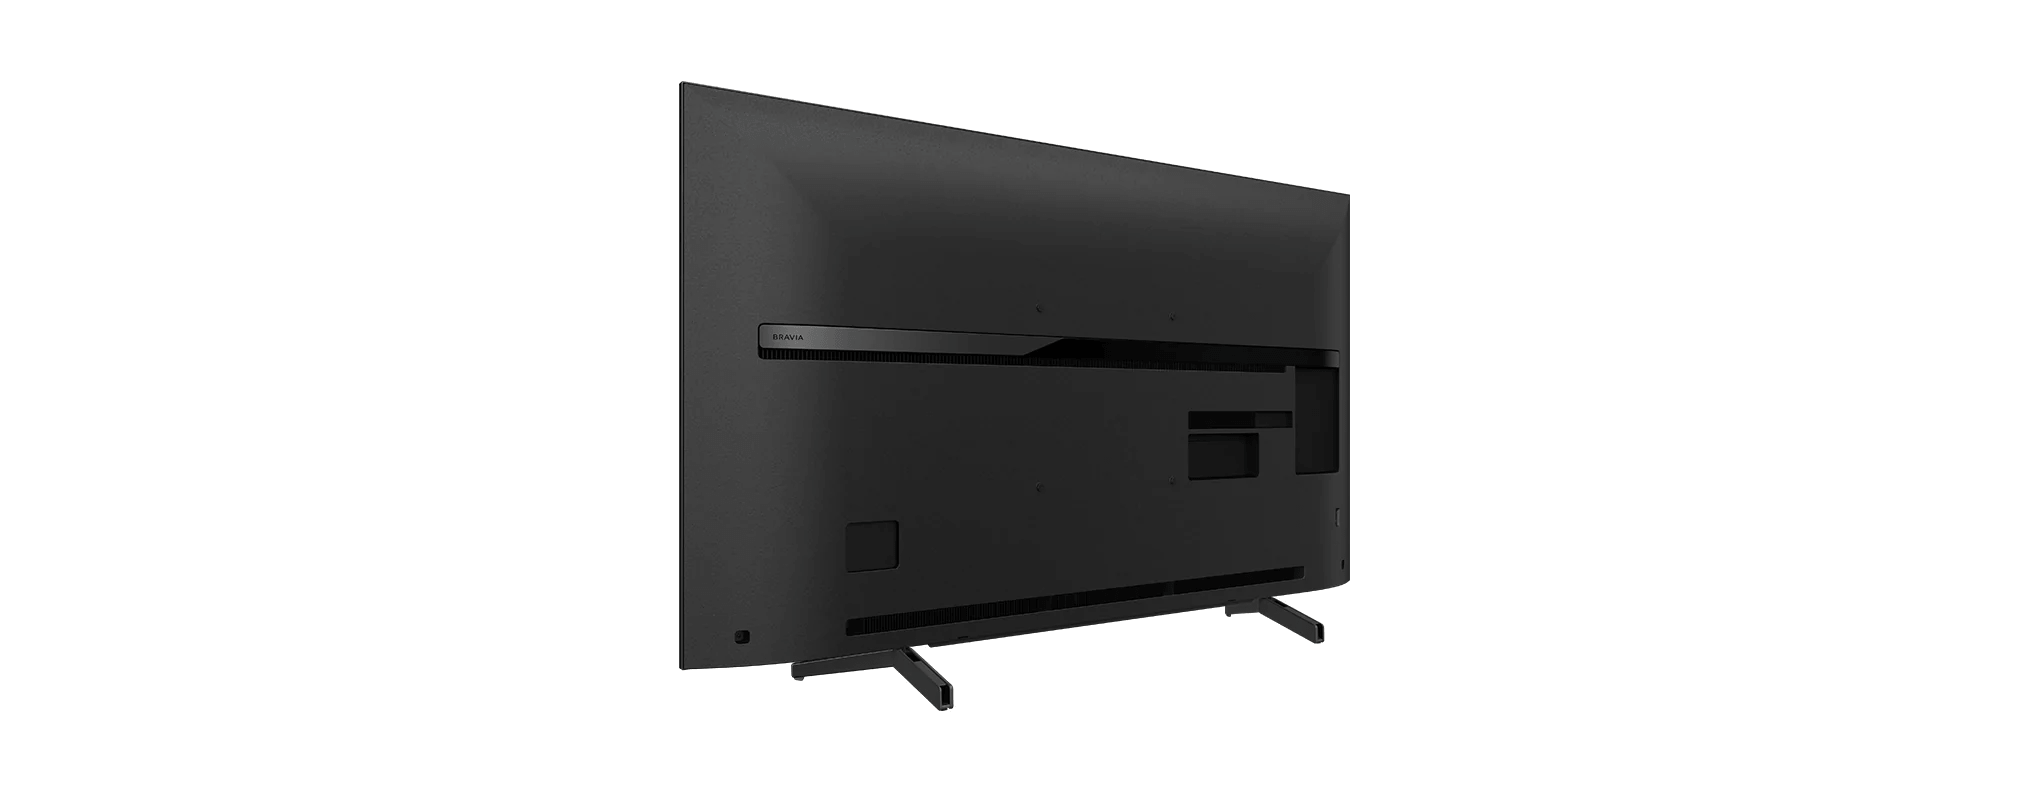 تلویزیون سونی مدل X8000G